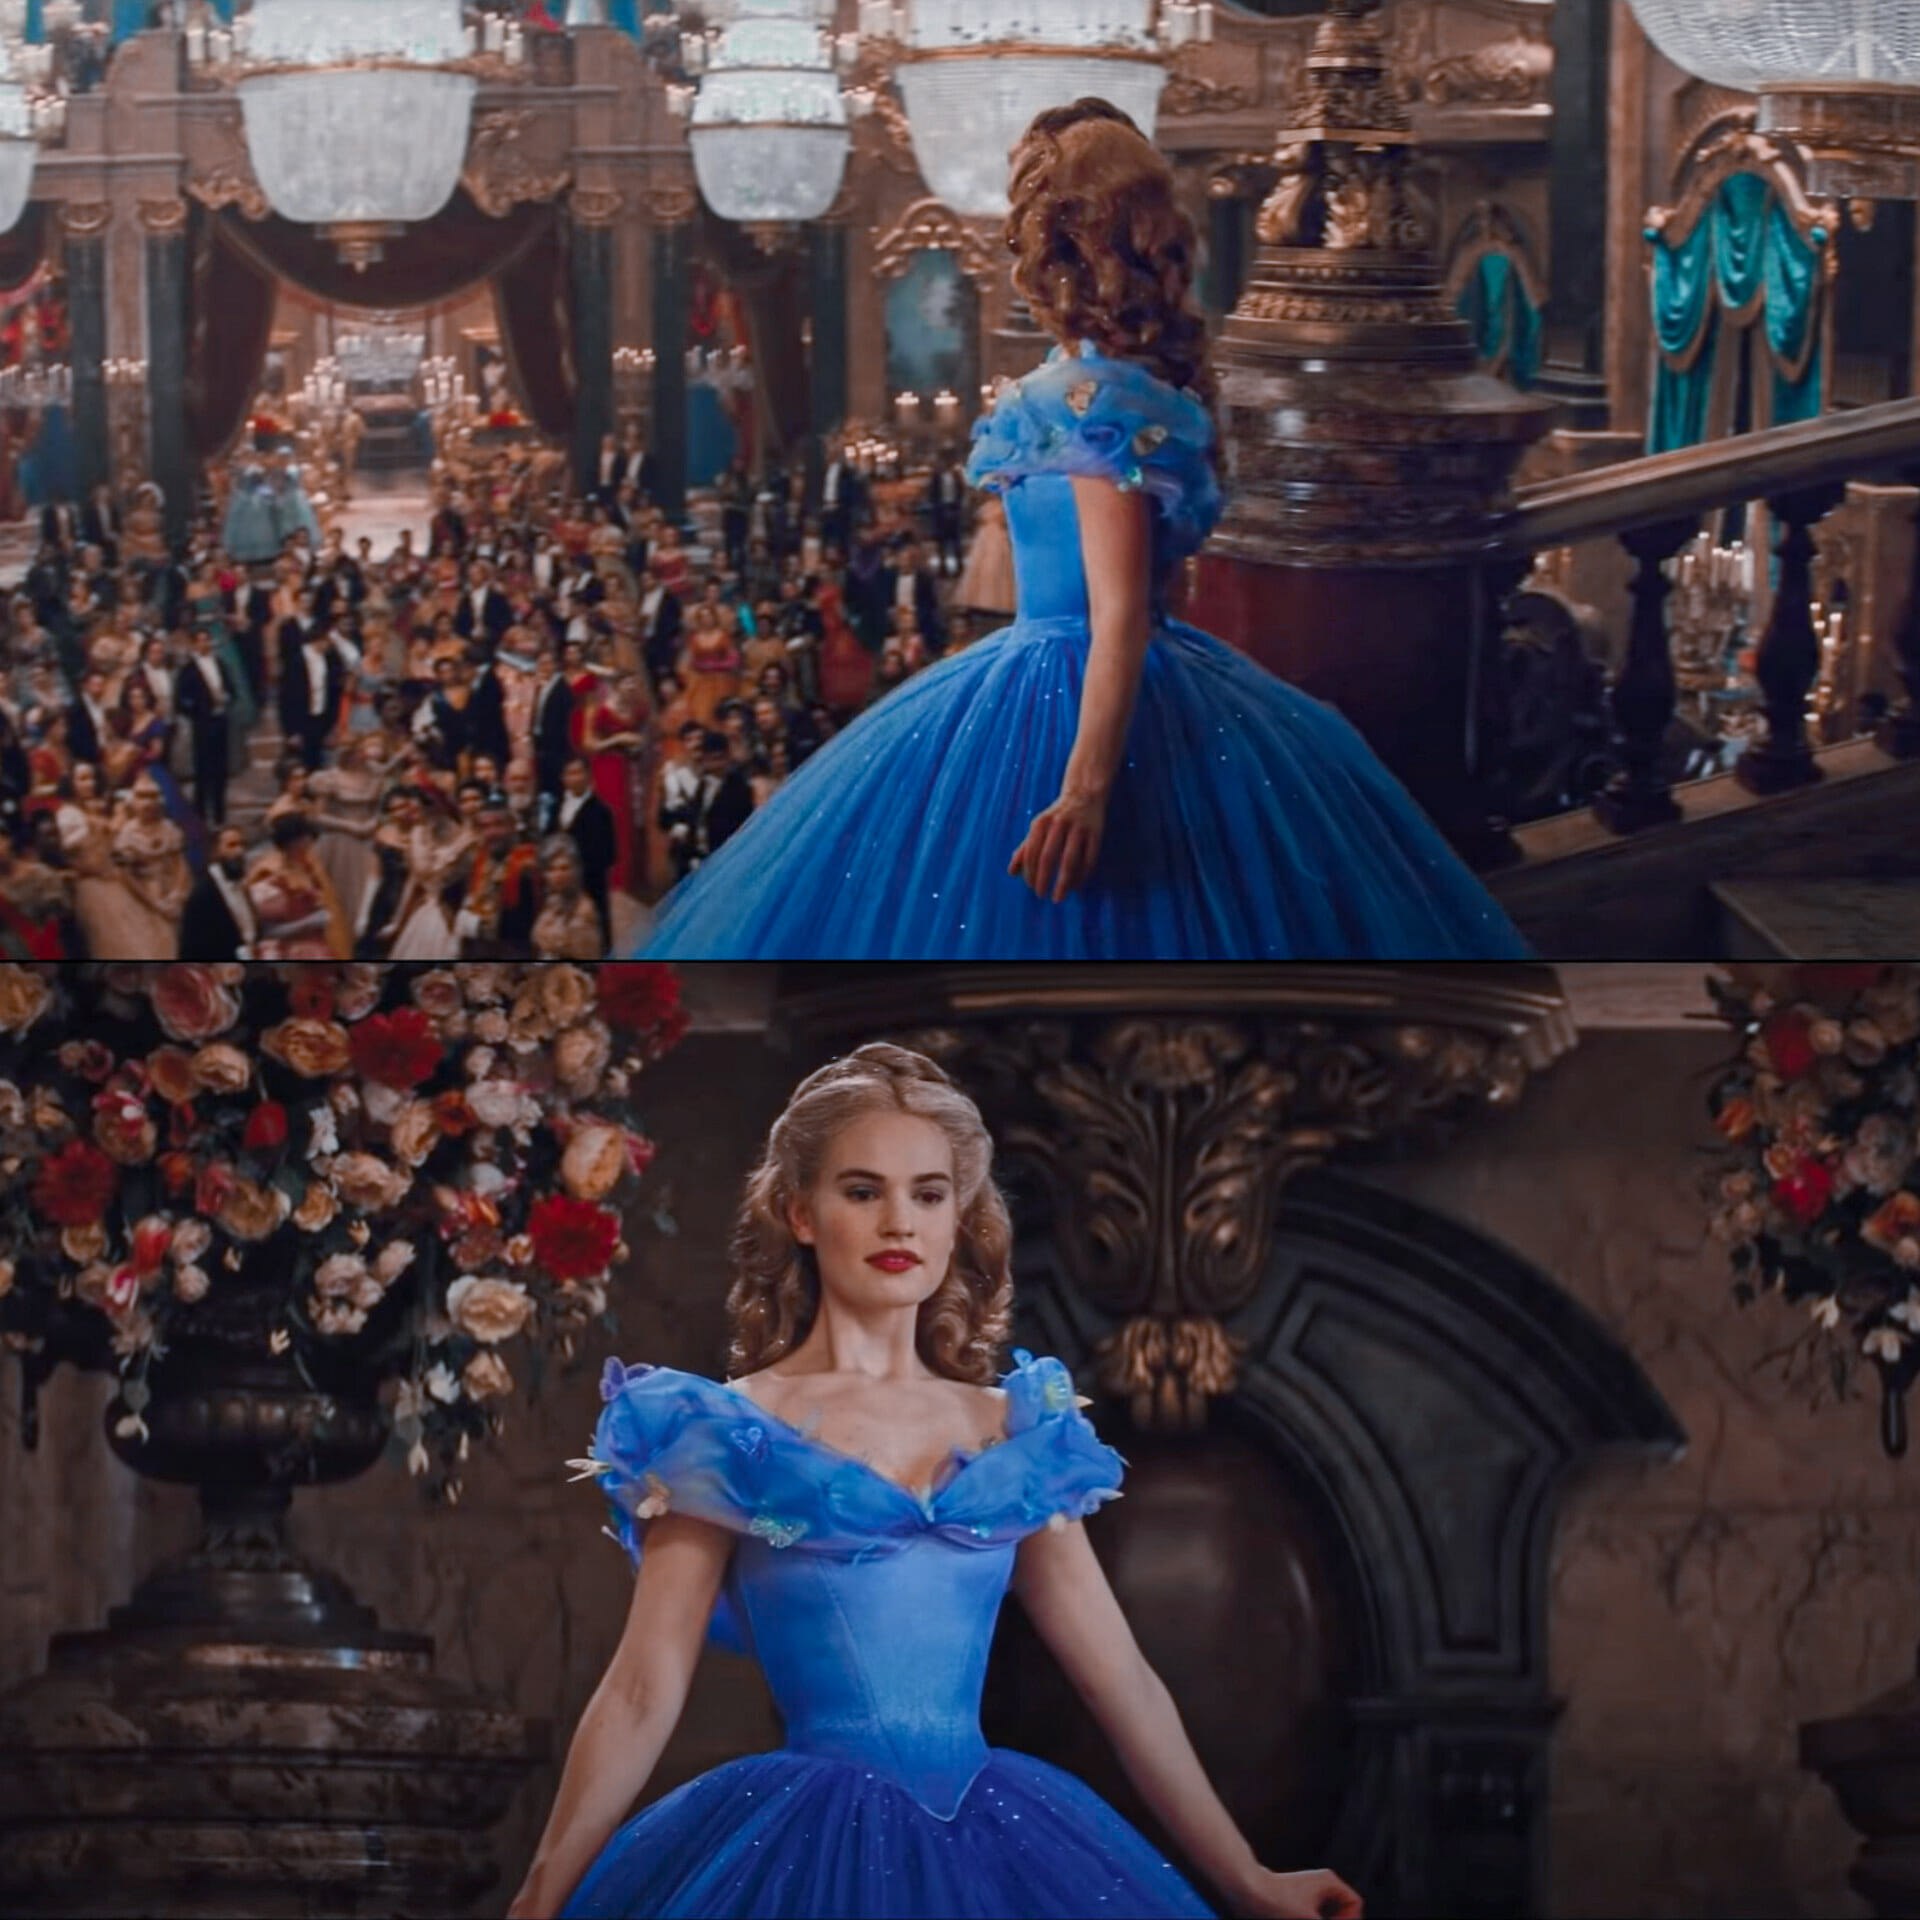 Đằng sau chiếc váy xanh Cinderella lộng lẫy nhất màn ảnh là nỗi đau tưởng như tra tấn - Ảnh 4.